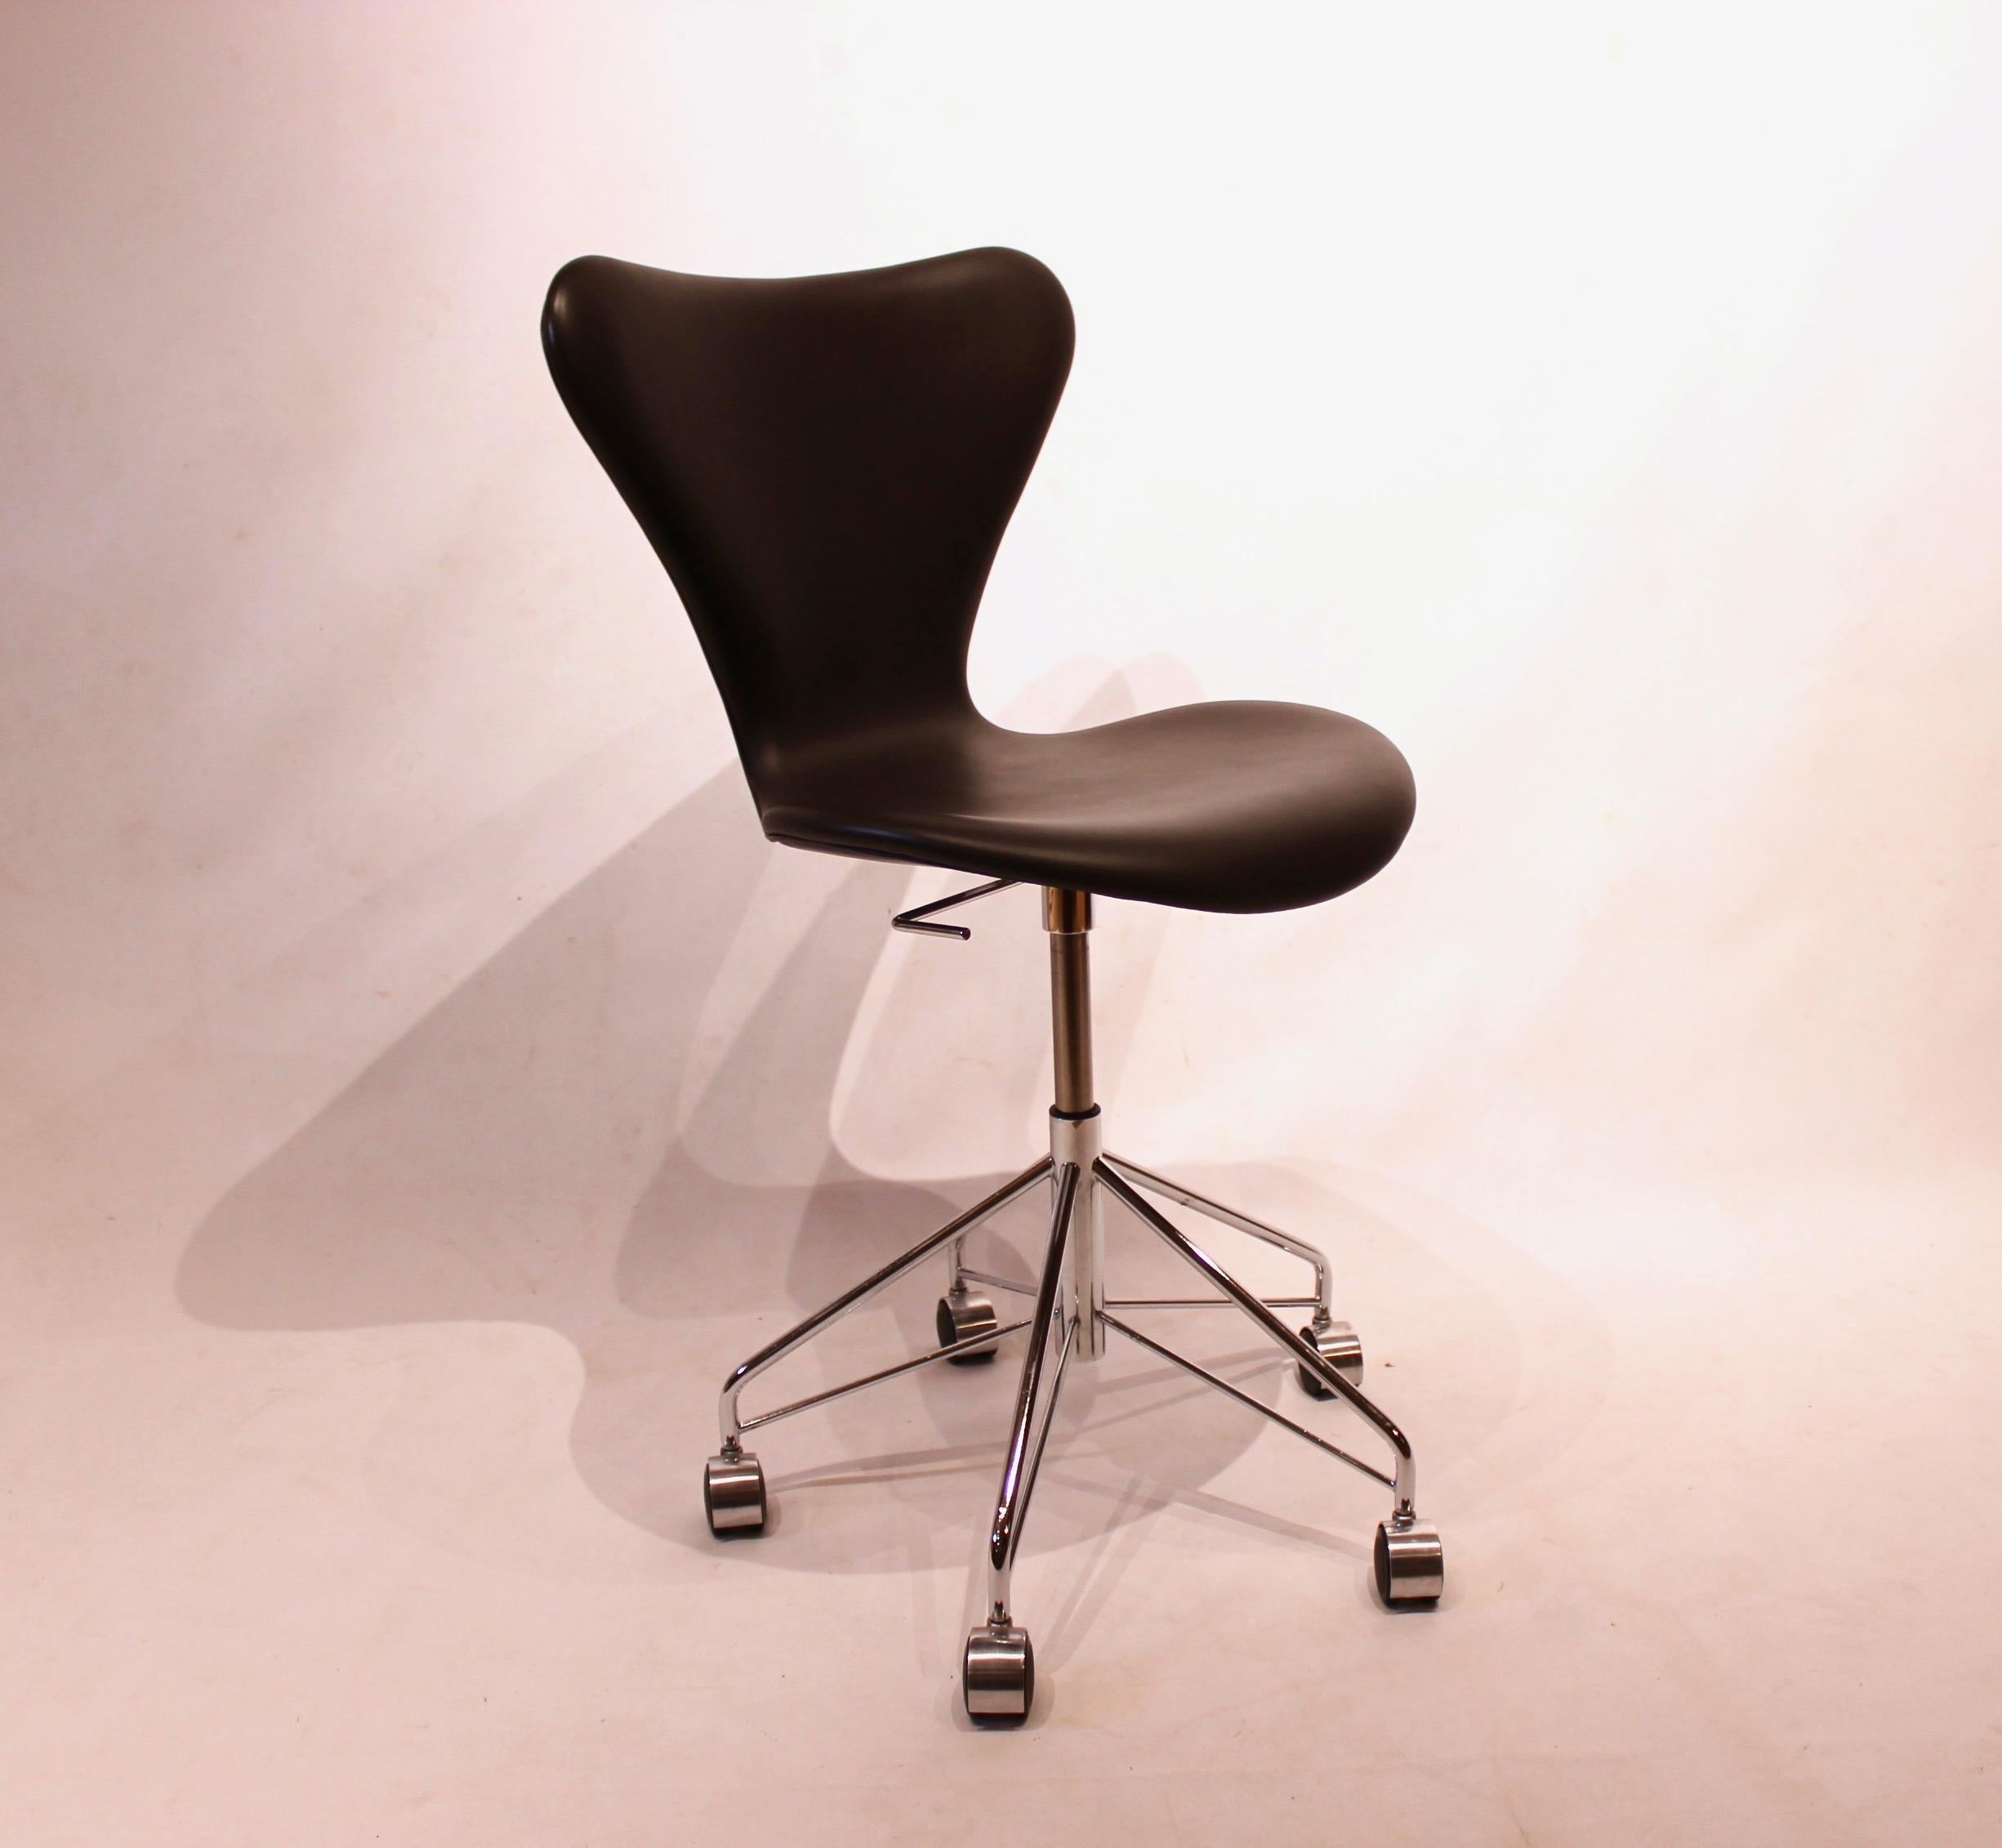 La chaise pivotante Series 7™ 3117 est fabriquée par la société de meubles danoise de renommée mondiale Fritz Hansen. La chaise est fabriquée en cuir noir et présente un design élégant avec des pieds en acier chromé. Il est entièrement paddé pour